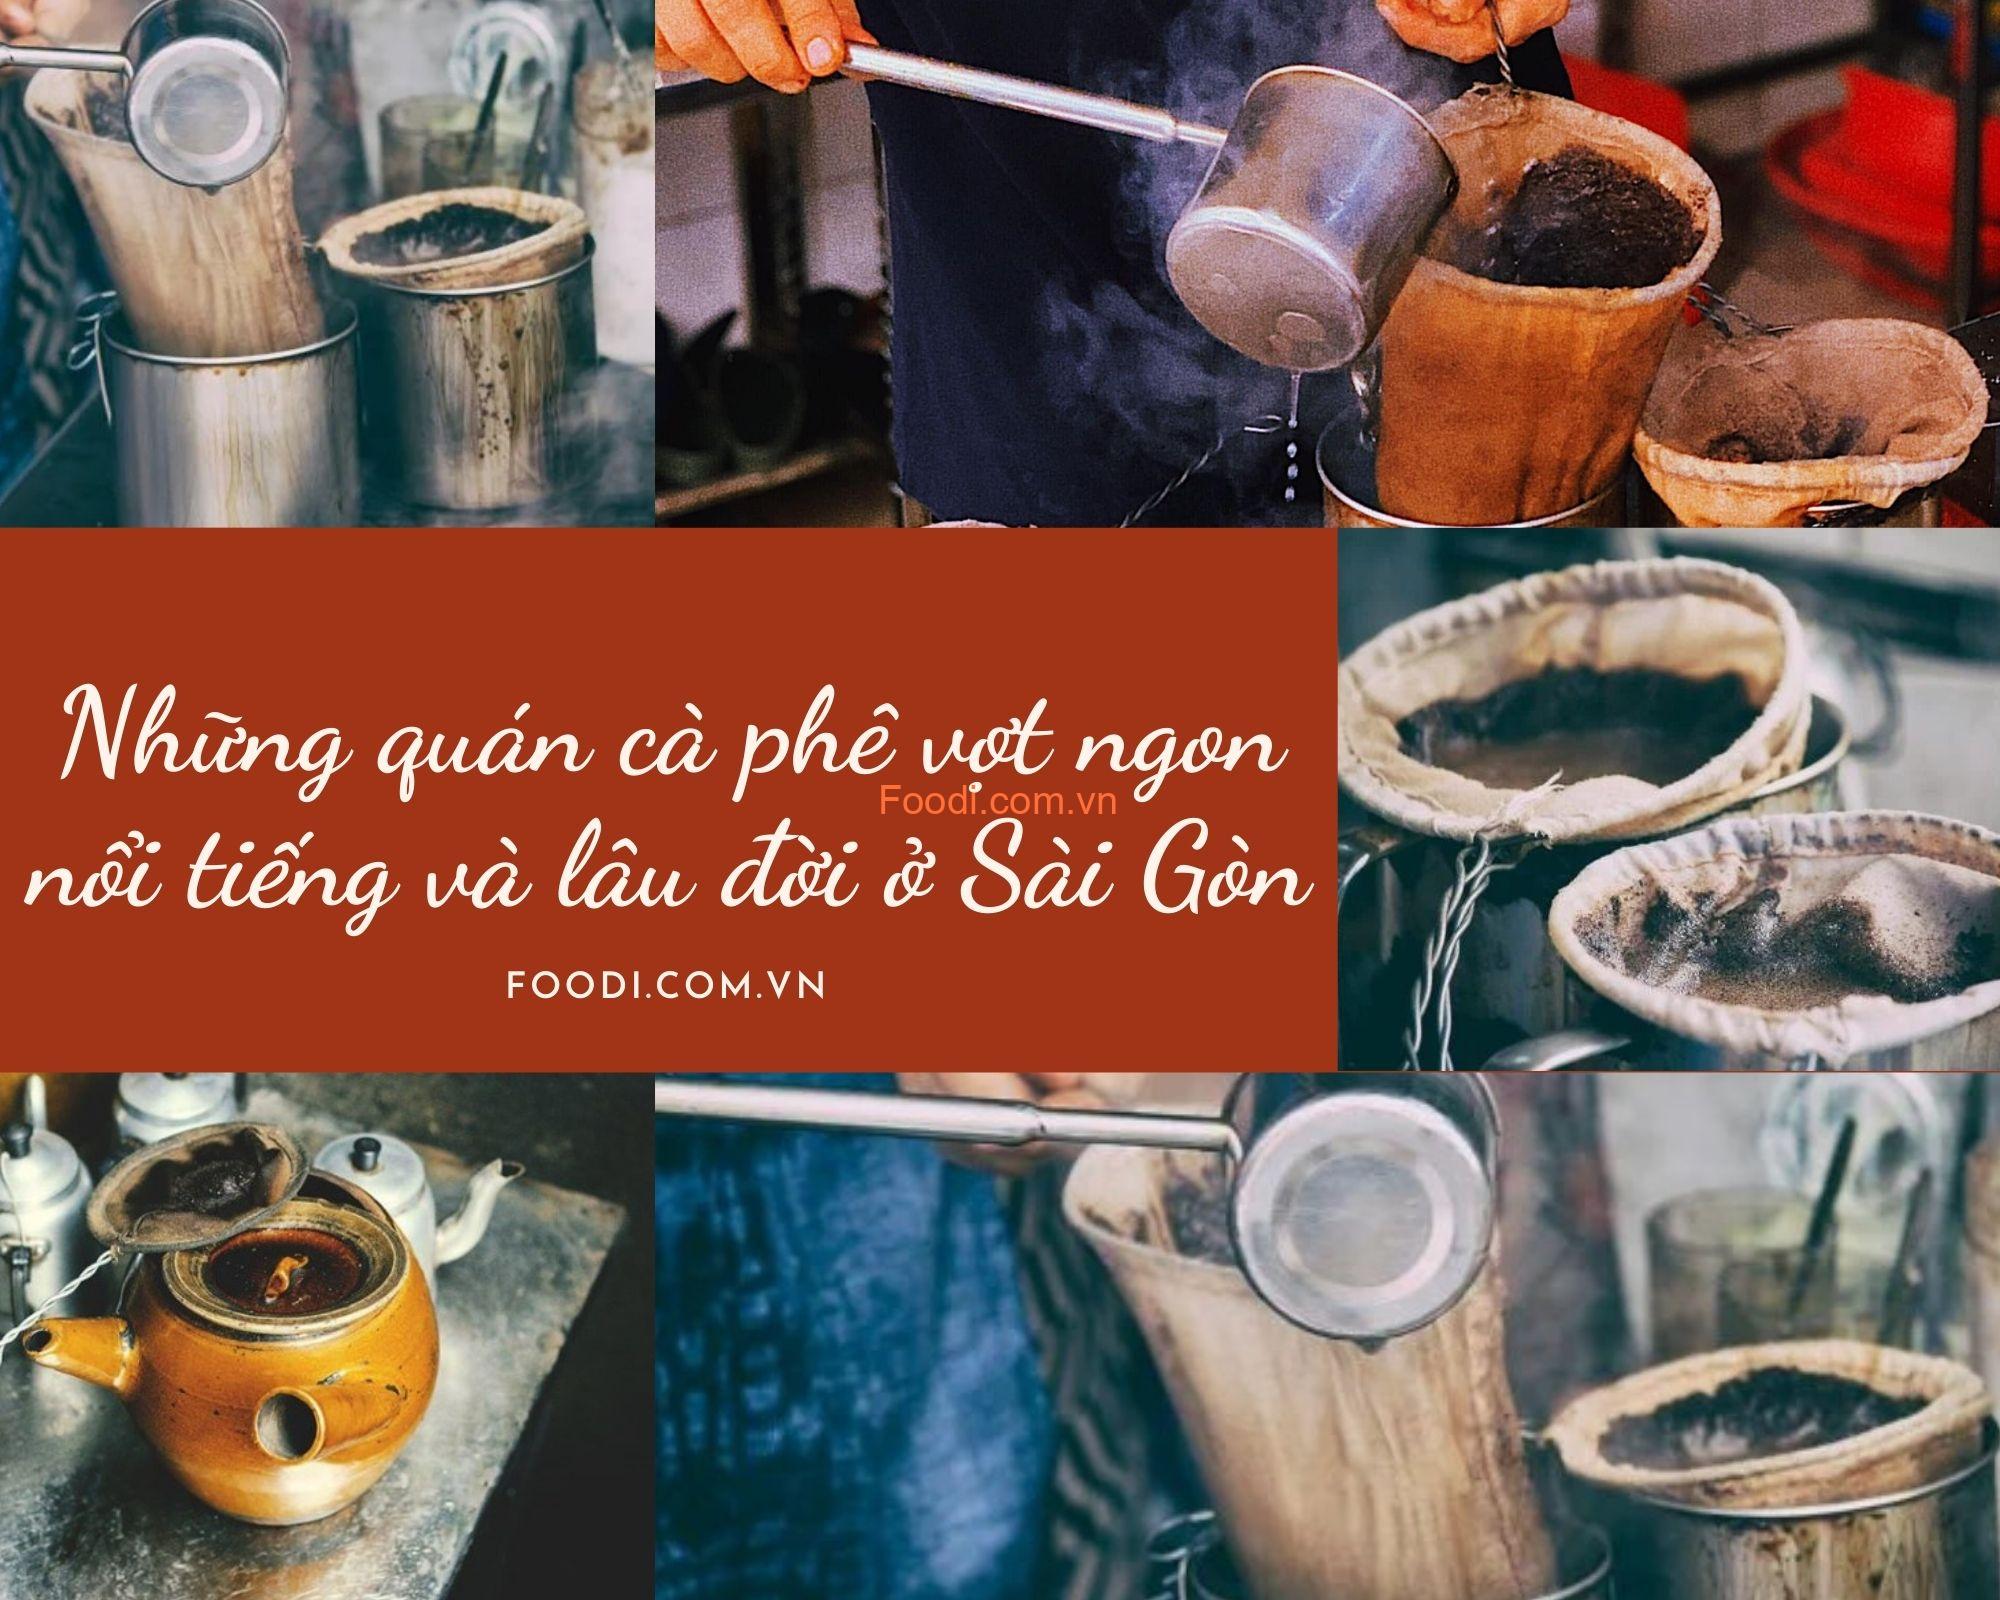 Những quán cà phê vợt ngon nổi tiếng và lâu đời nhất ở Sài Gòn TPHCM